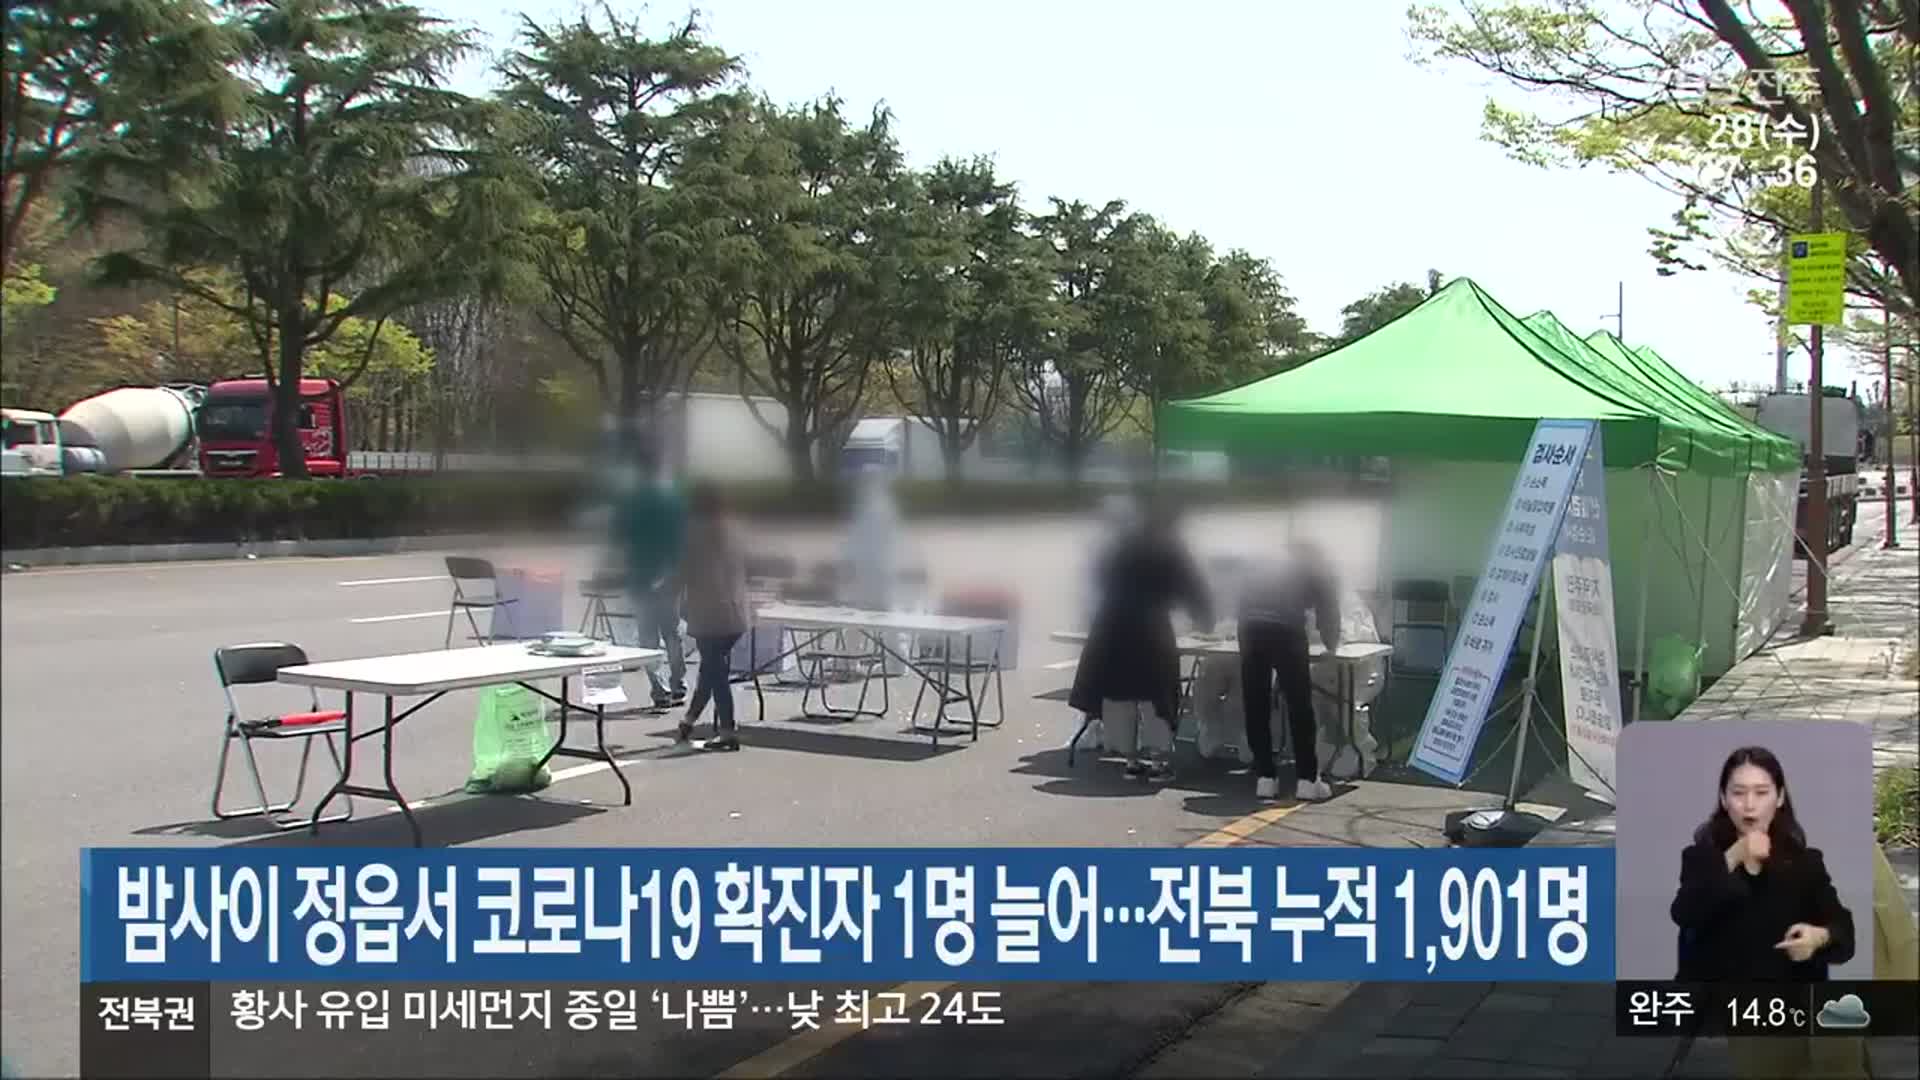 밤사이 정읍서 코로나19 확진자 1명 늘어…전북 누적 1,901명